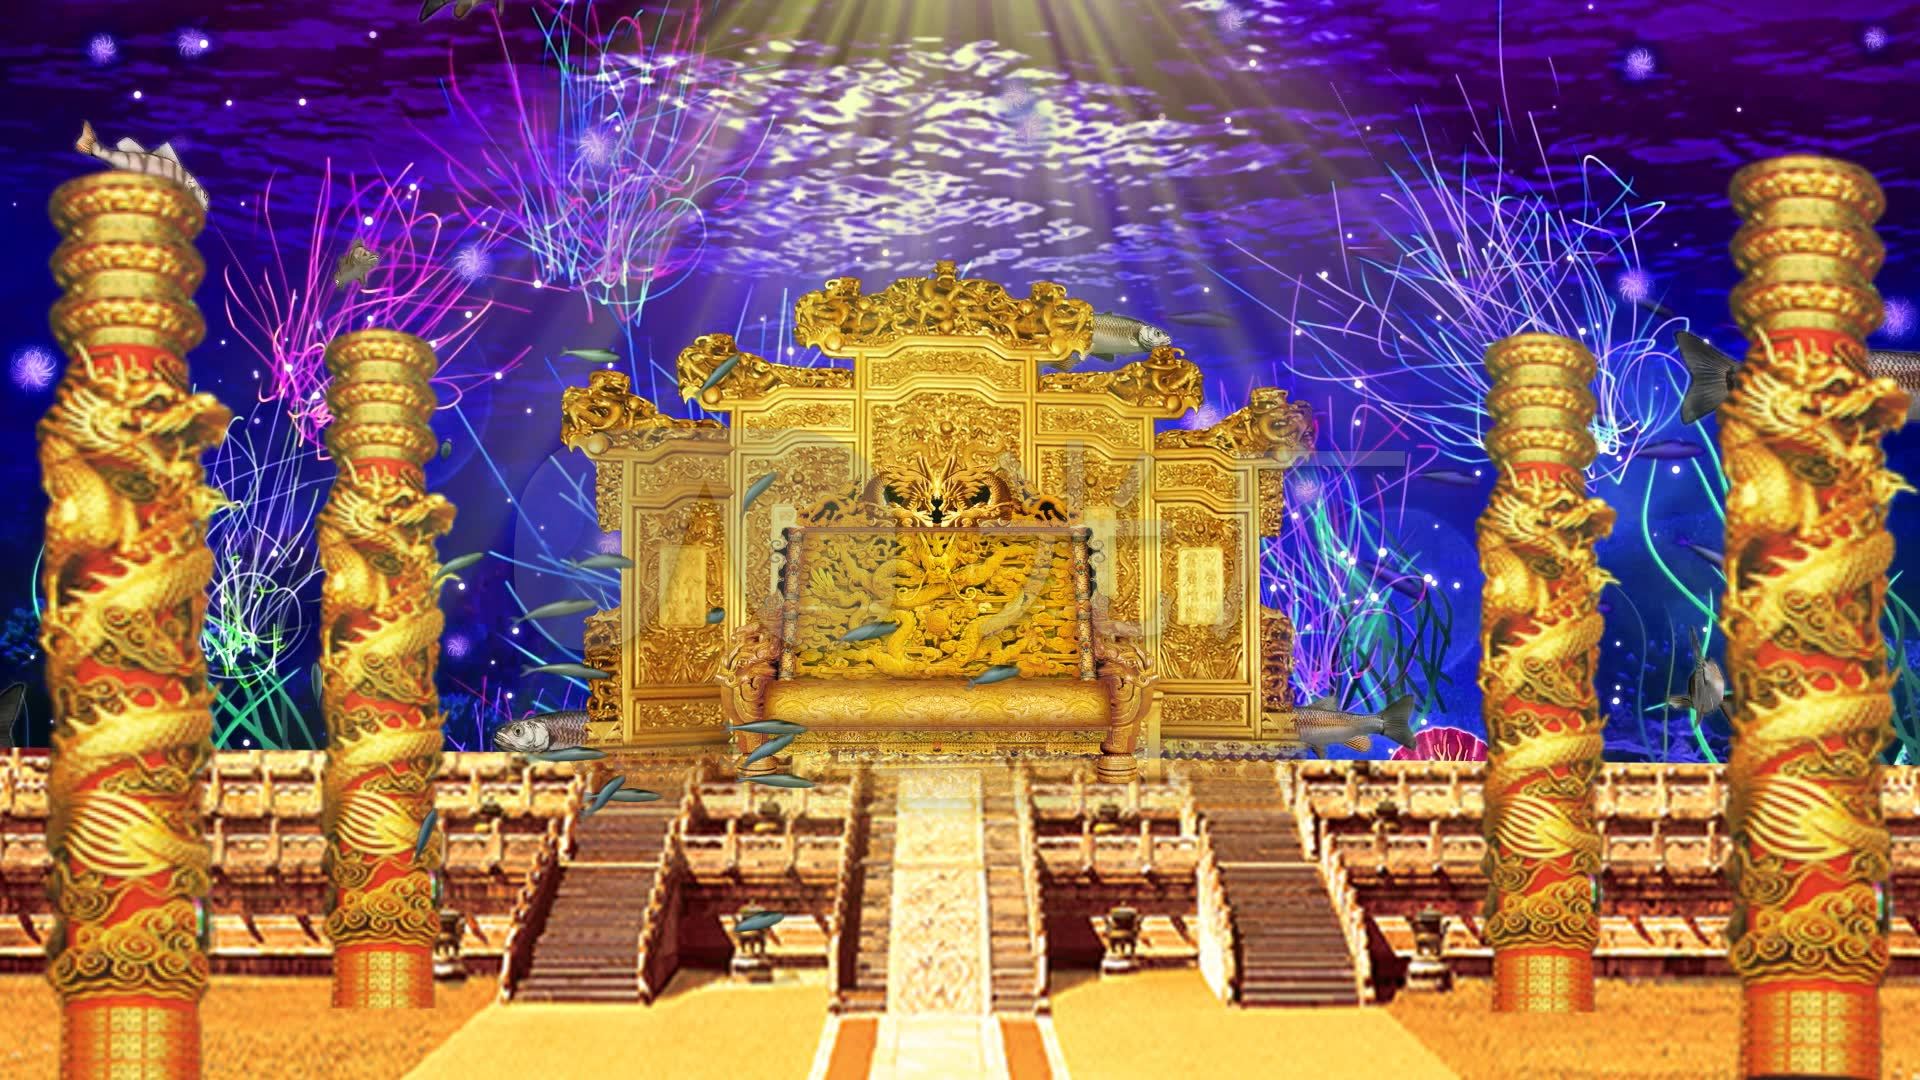 海皇宫殿 由 juyue 创作 | 乐艺leewiART CG精英艺术社区，汇聚优秀CG艺术作品